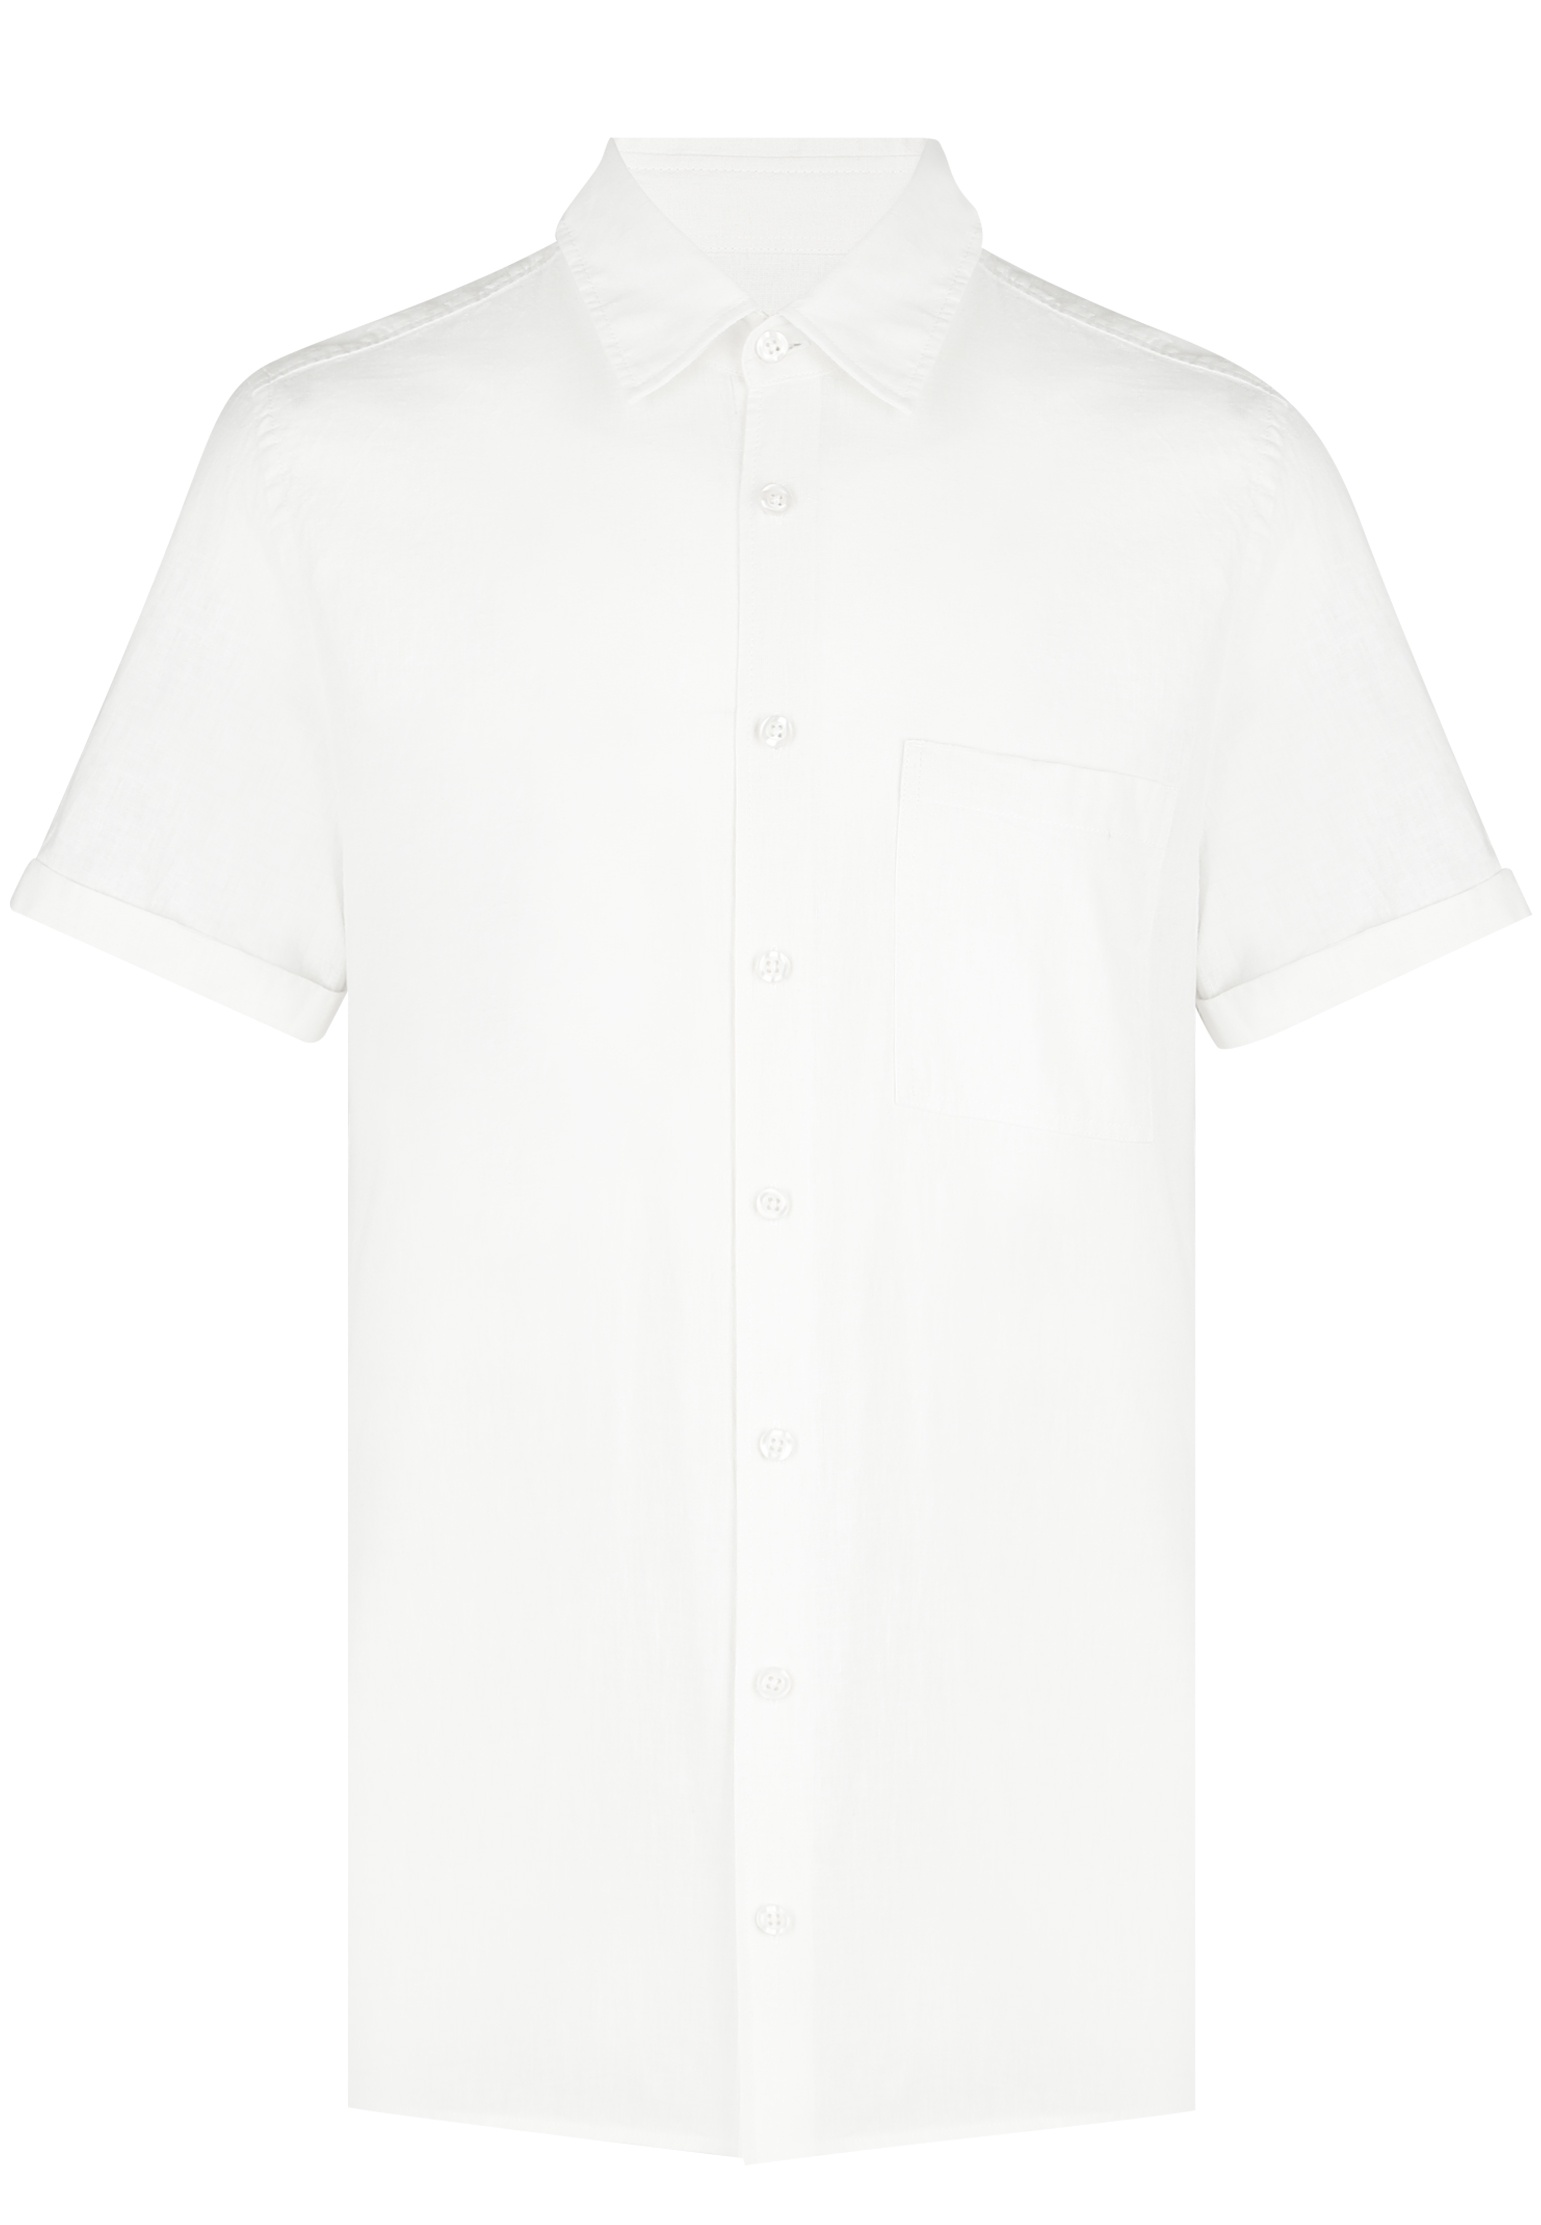 Рубашка мужская Strellson 142476 белая XL